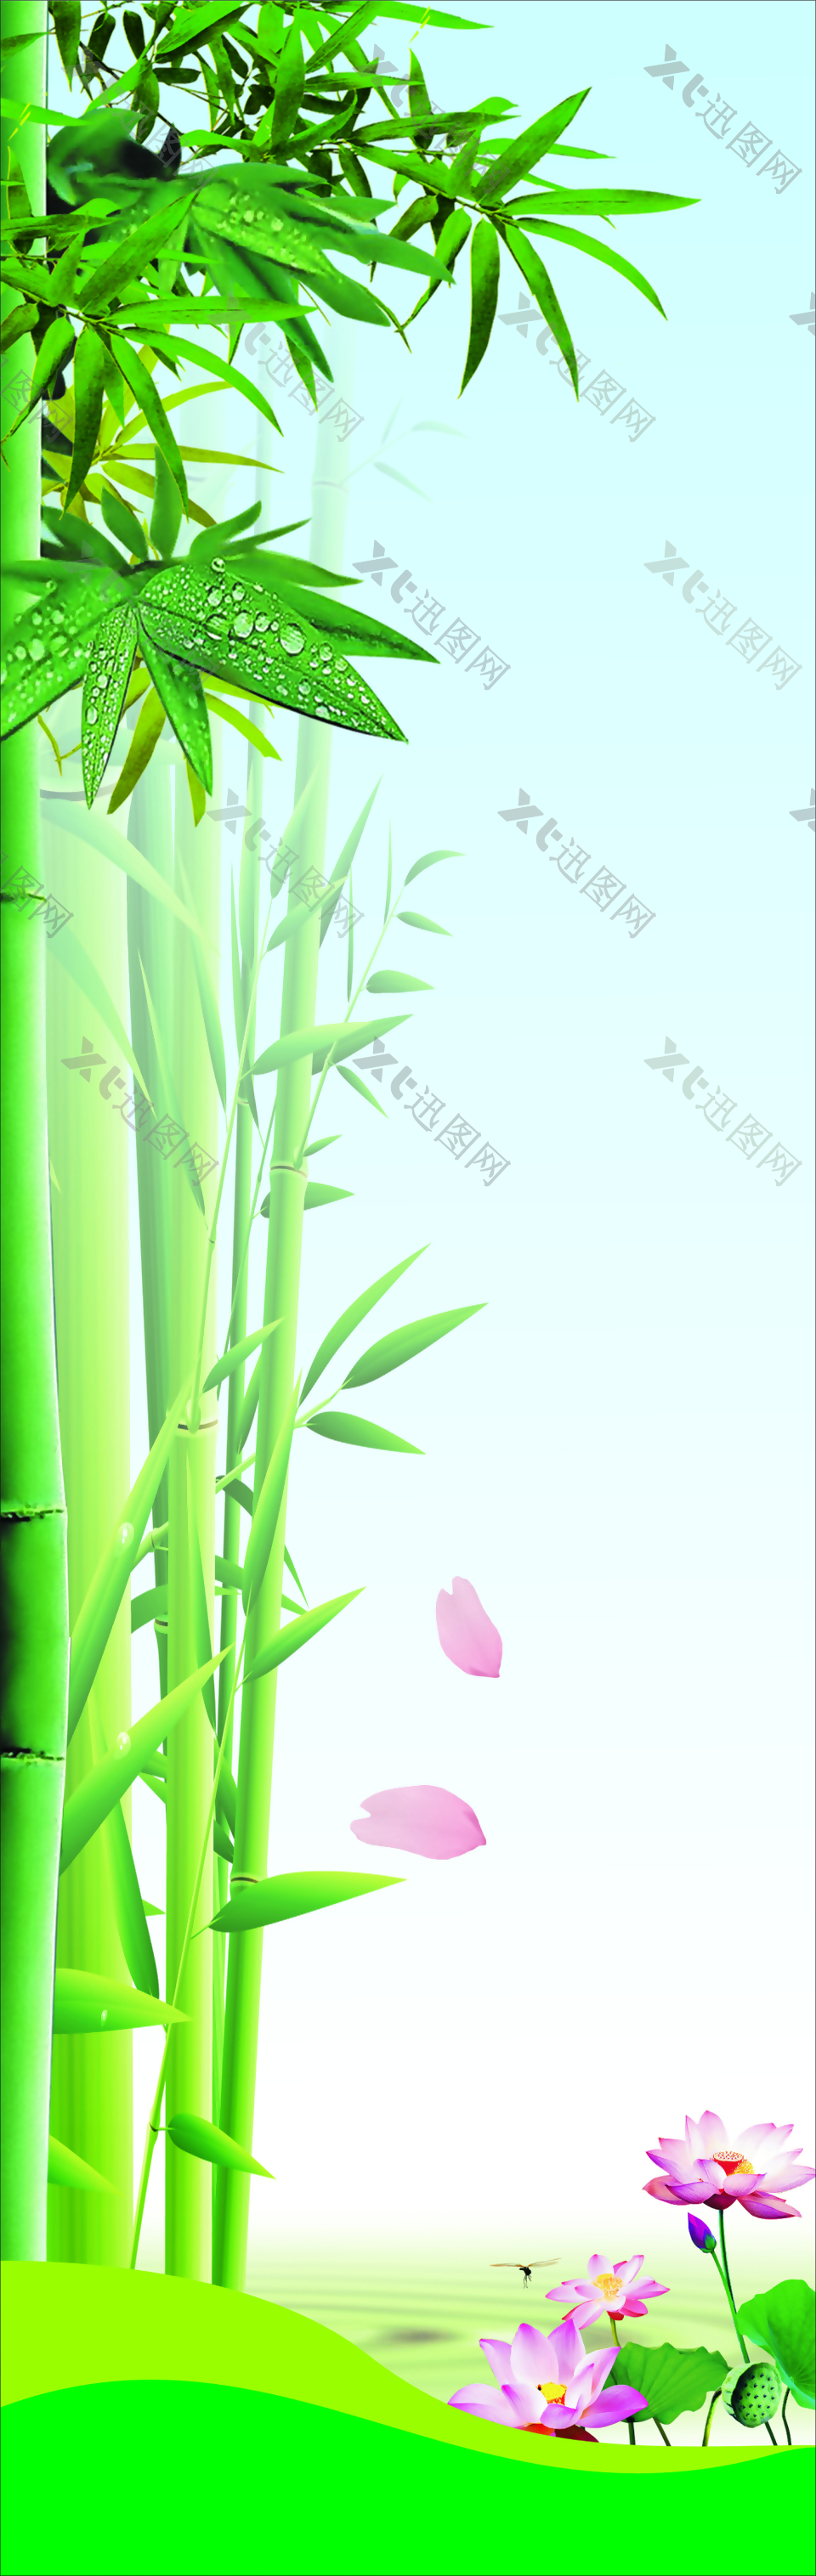 竹子标语背景